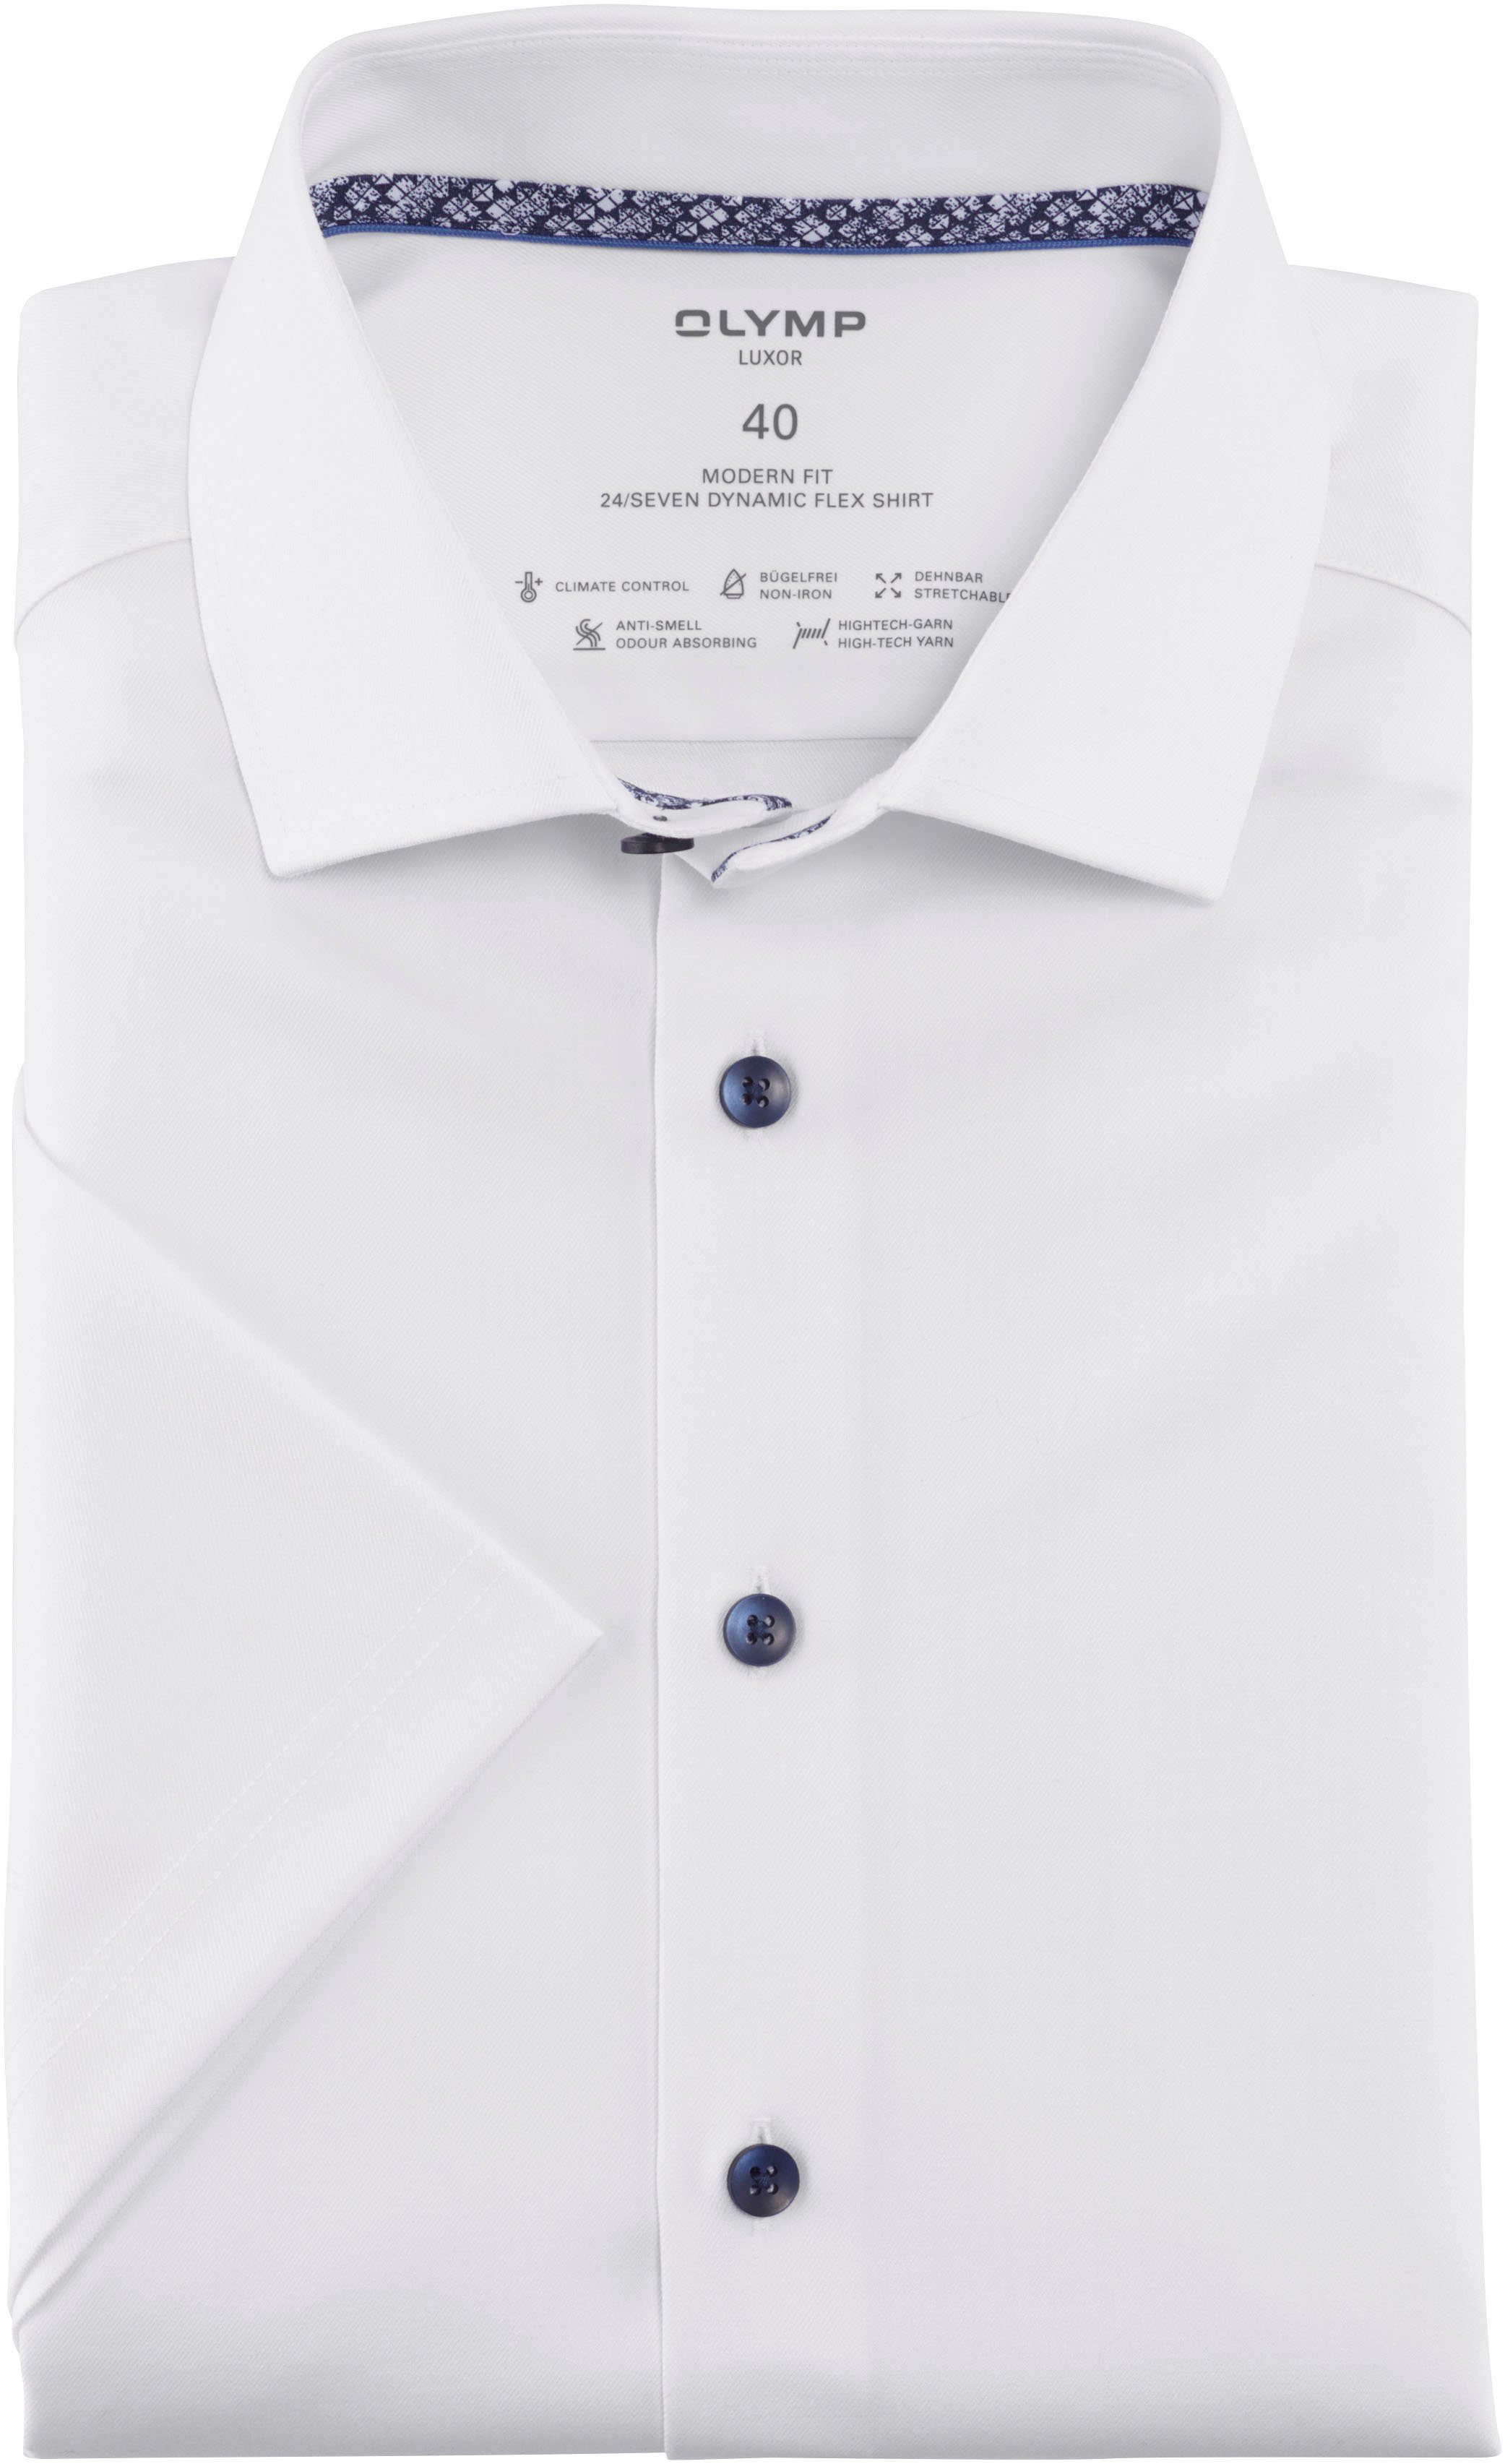 OLYMP Kurzarmhemd Luxor modern fit in 24/7 Dynamic Flex Quality weiß | Klassische Hemden